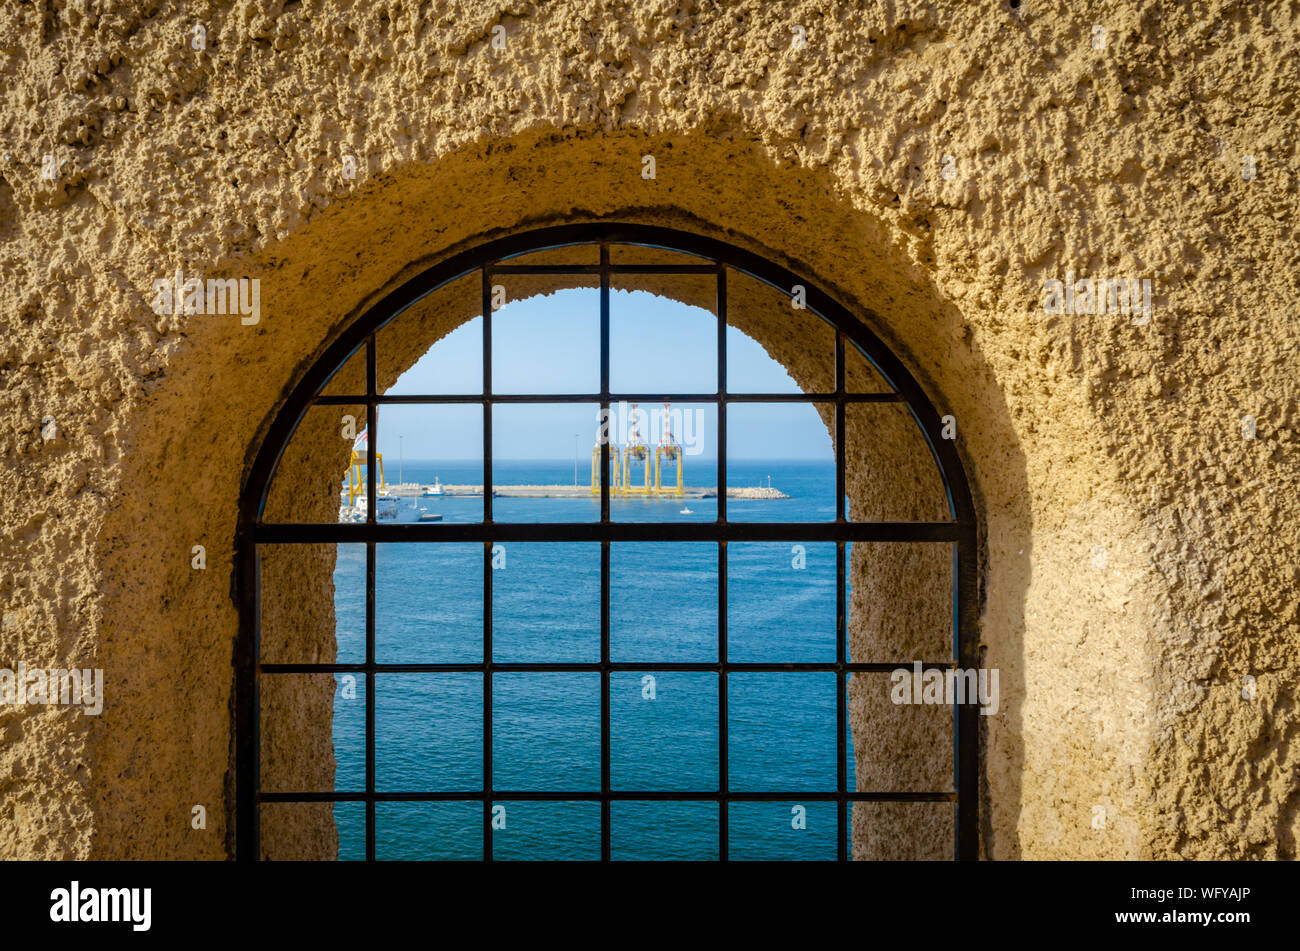 Vista al mar y el puerto a través de una puerta fortificada con barras de hierro desde las alturas de Muttrah Fort. De Muscat, Omán. Foto de stock